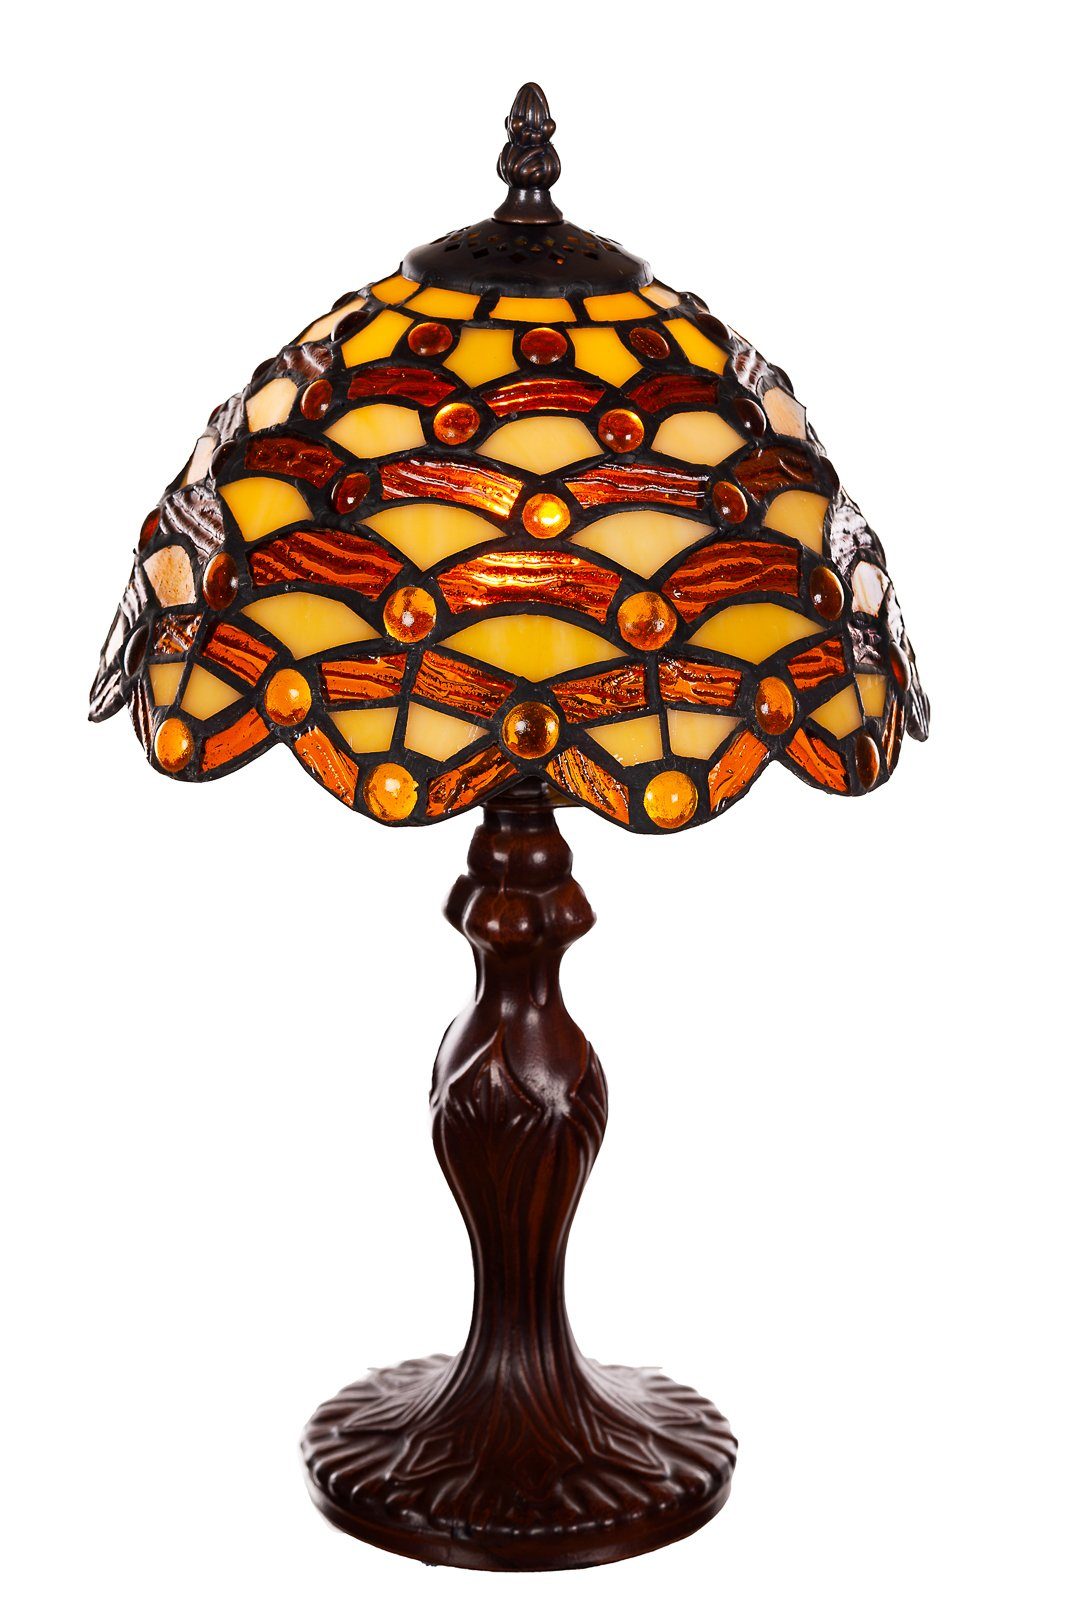 Lampe Dekorationslampe Motiv Waben Tischlampe BIRENDY Stehlampe Tiffany Ti156 Steine